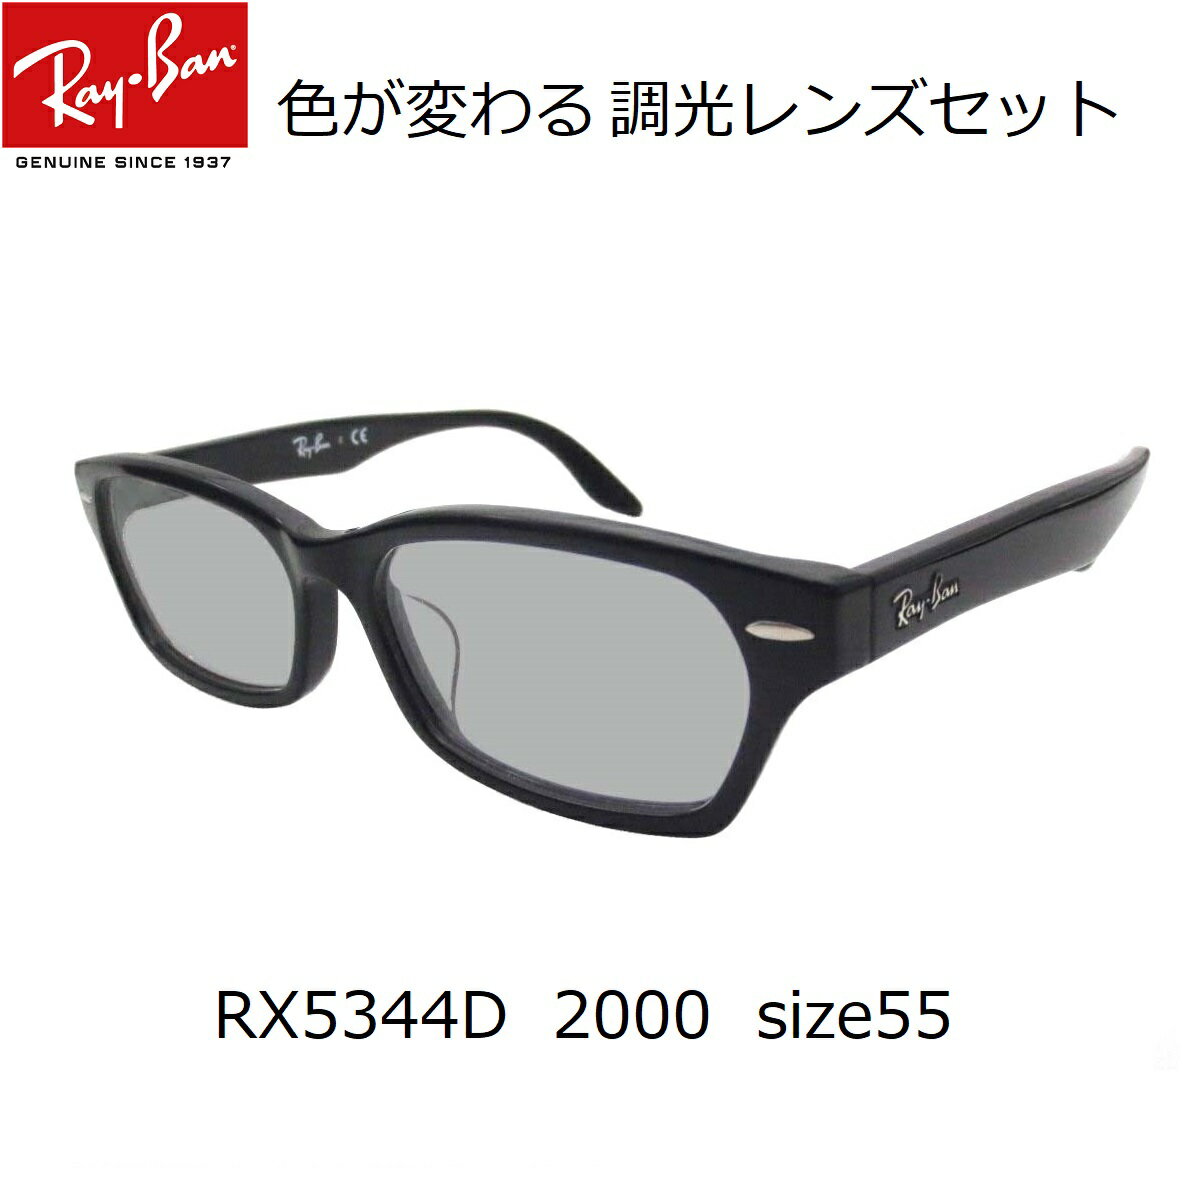 あす楽対応・色が変わる調光レンズ付 レイバン 調光サングラスセット 調光メガネセット Ray-Ban（レイバン）RX5344D 2000（55）（調光レンズセット）大人気のクロセルフレーム RX5130に近いデザイン 2